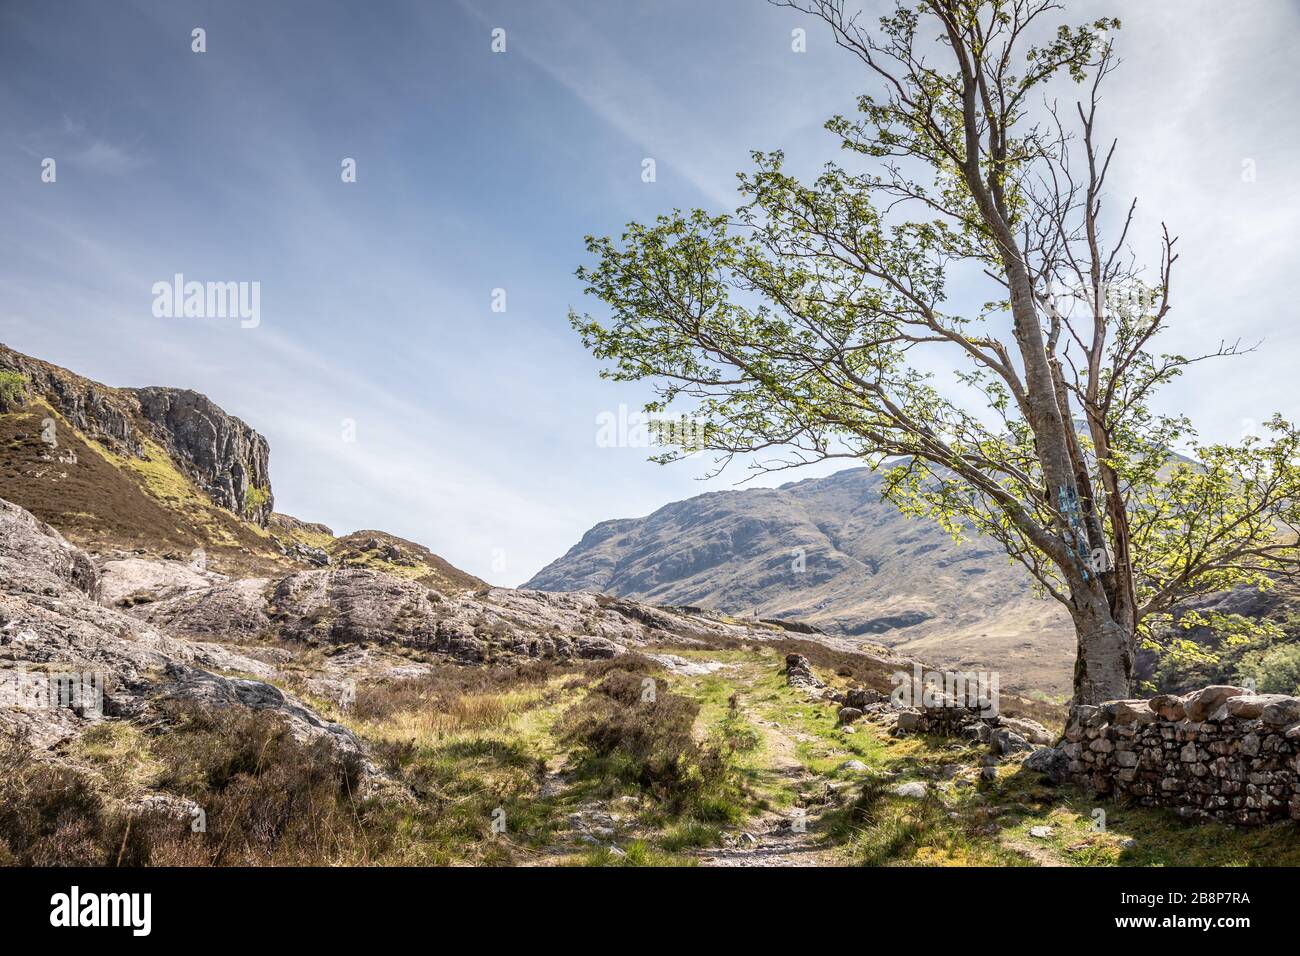 Scena rurale vicino a Glen Coe, Highlands, Scozia, Regno Unito - 14 maggio 2019 Foto Stock